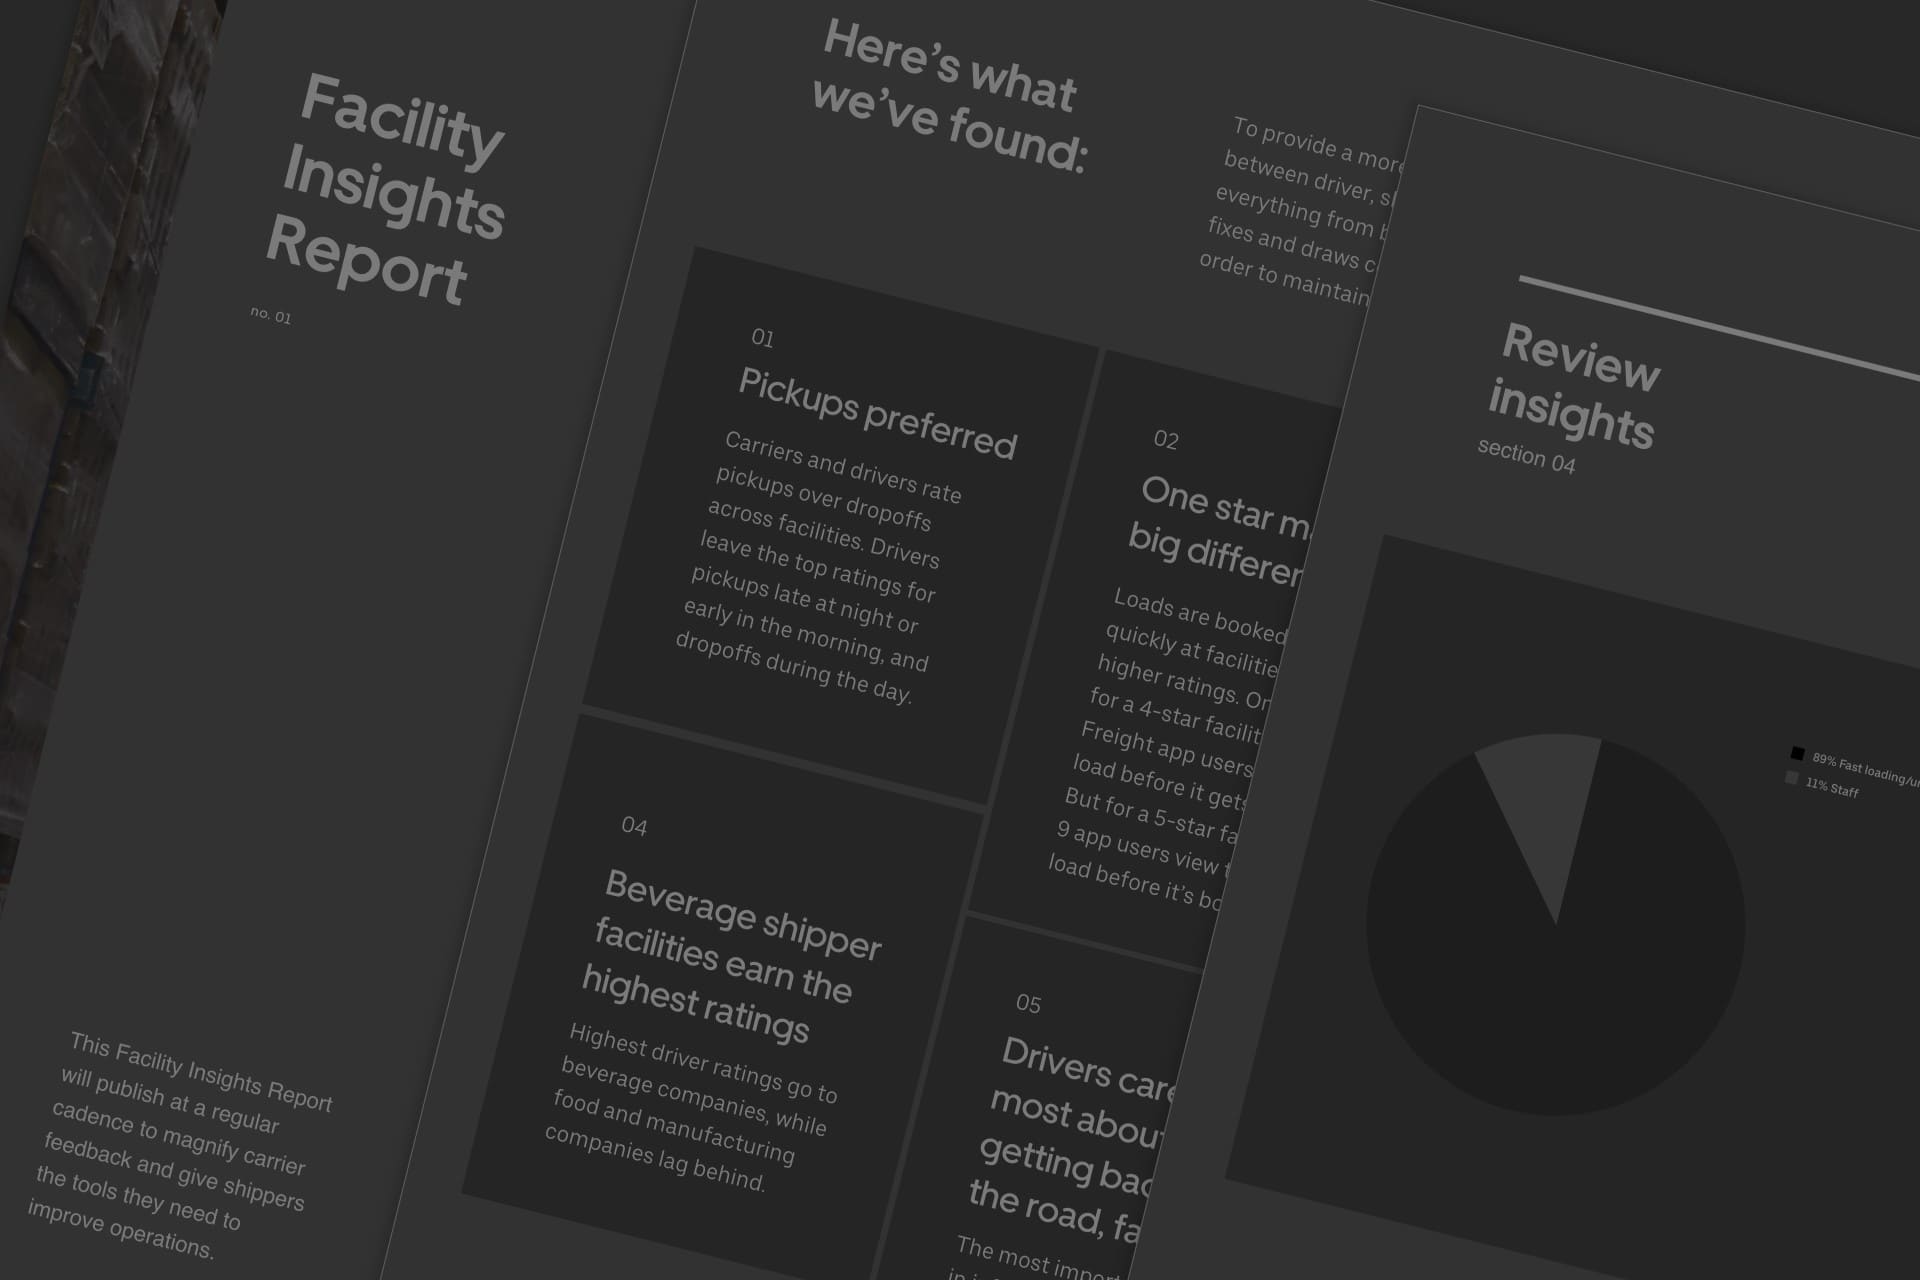 Le nouveau rapport Facility Insights présente les principaux enseignements aux expéditeurs